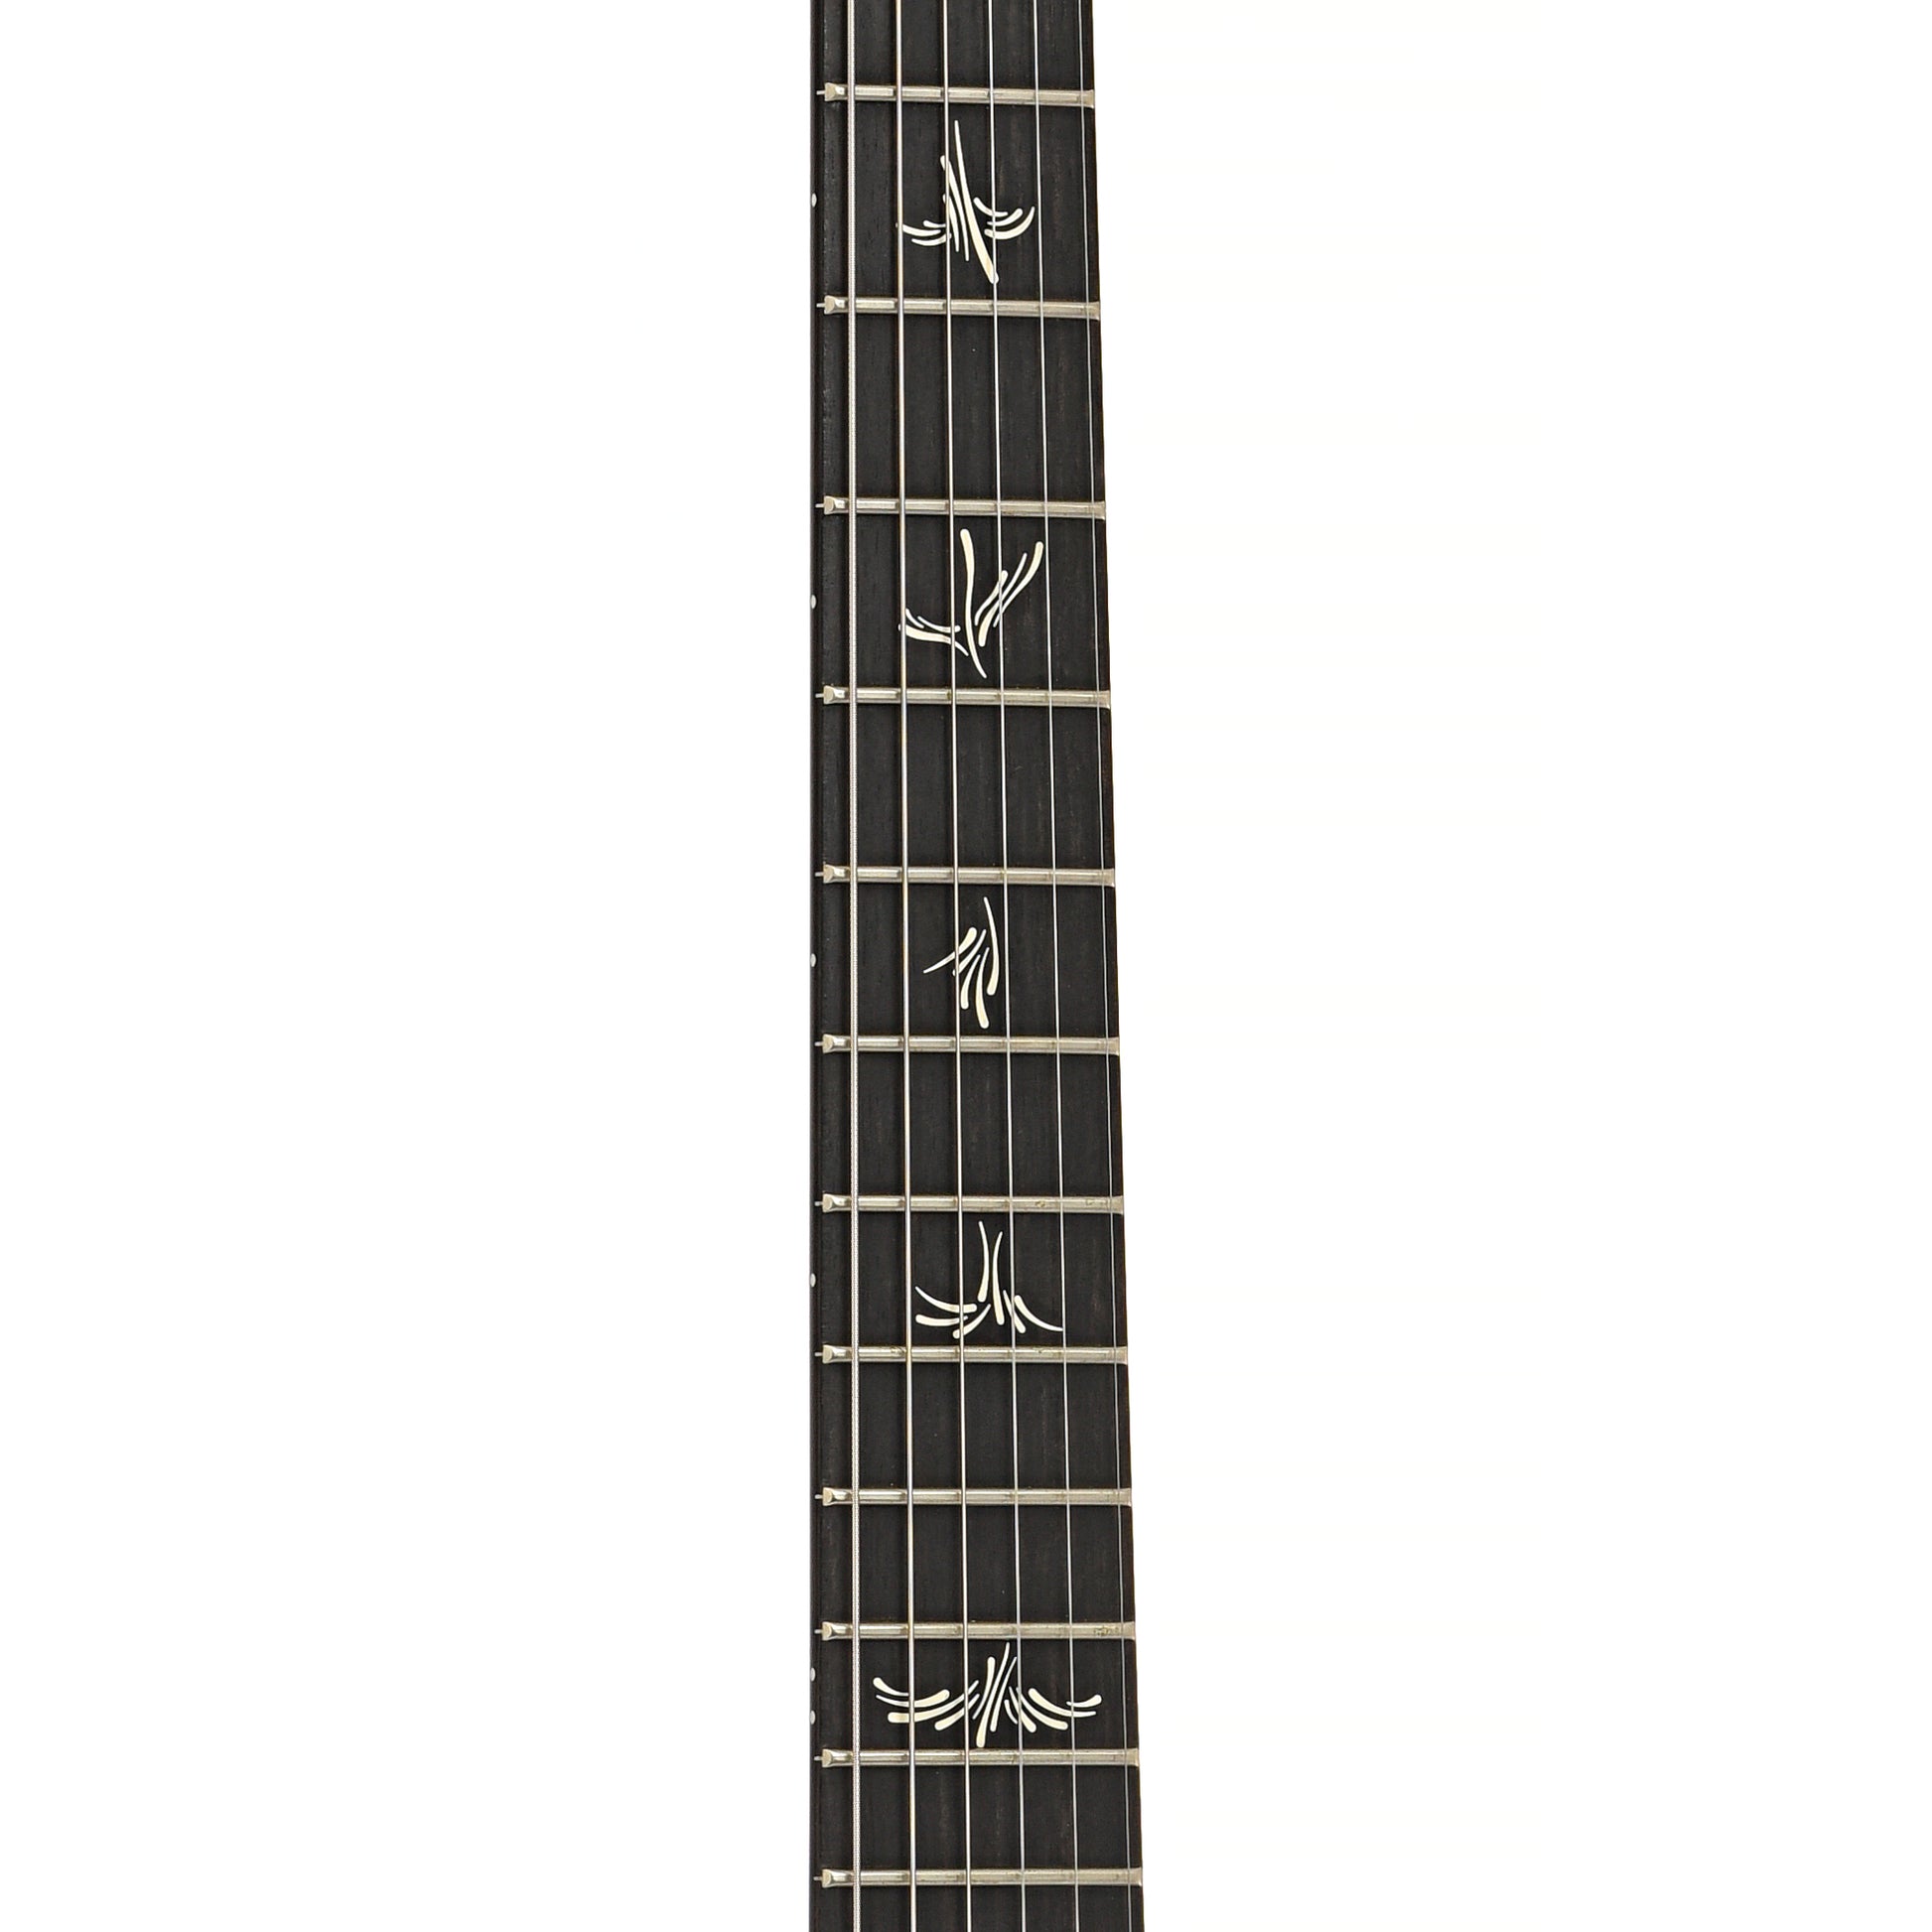 Fretboard of PRS Modern Eagle V guitar